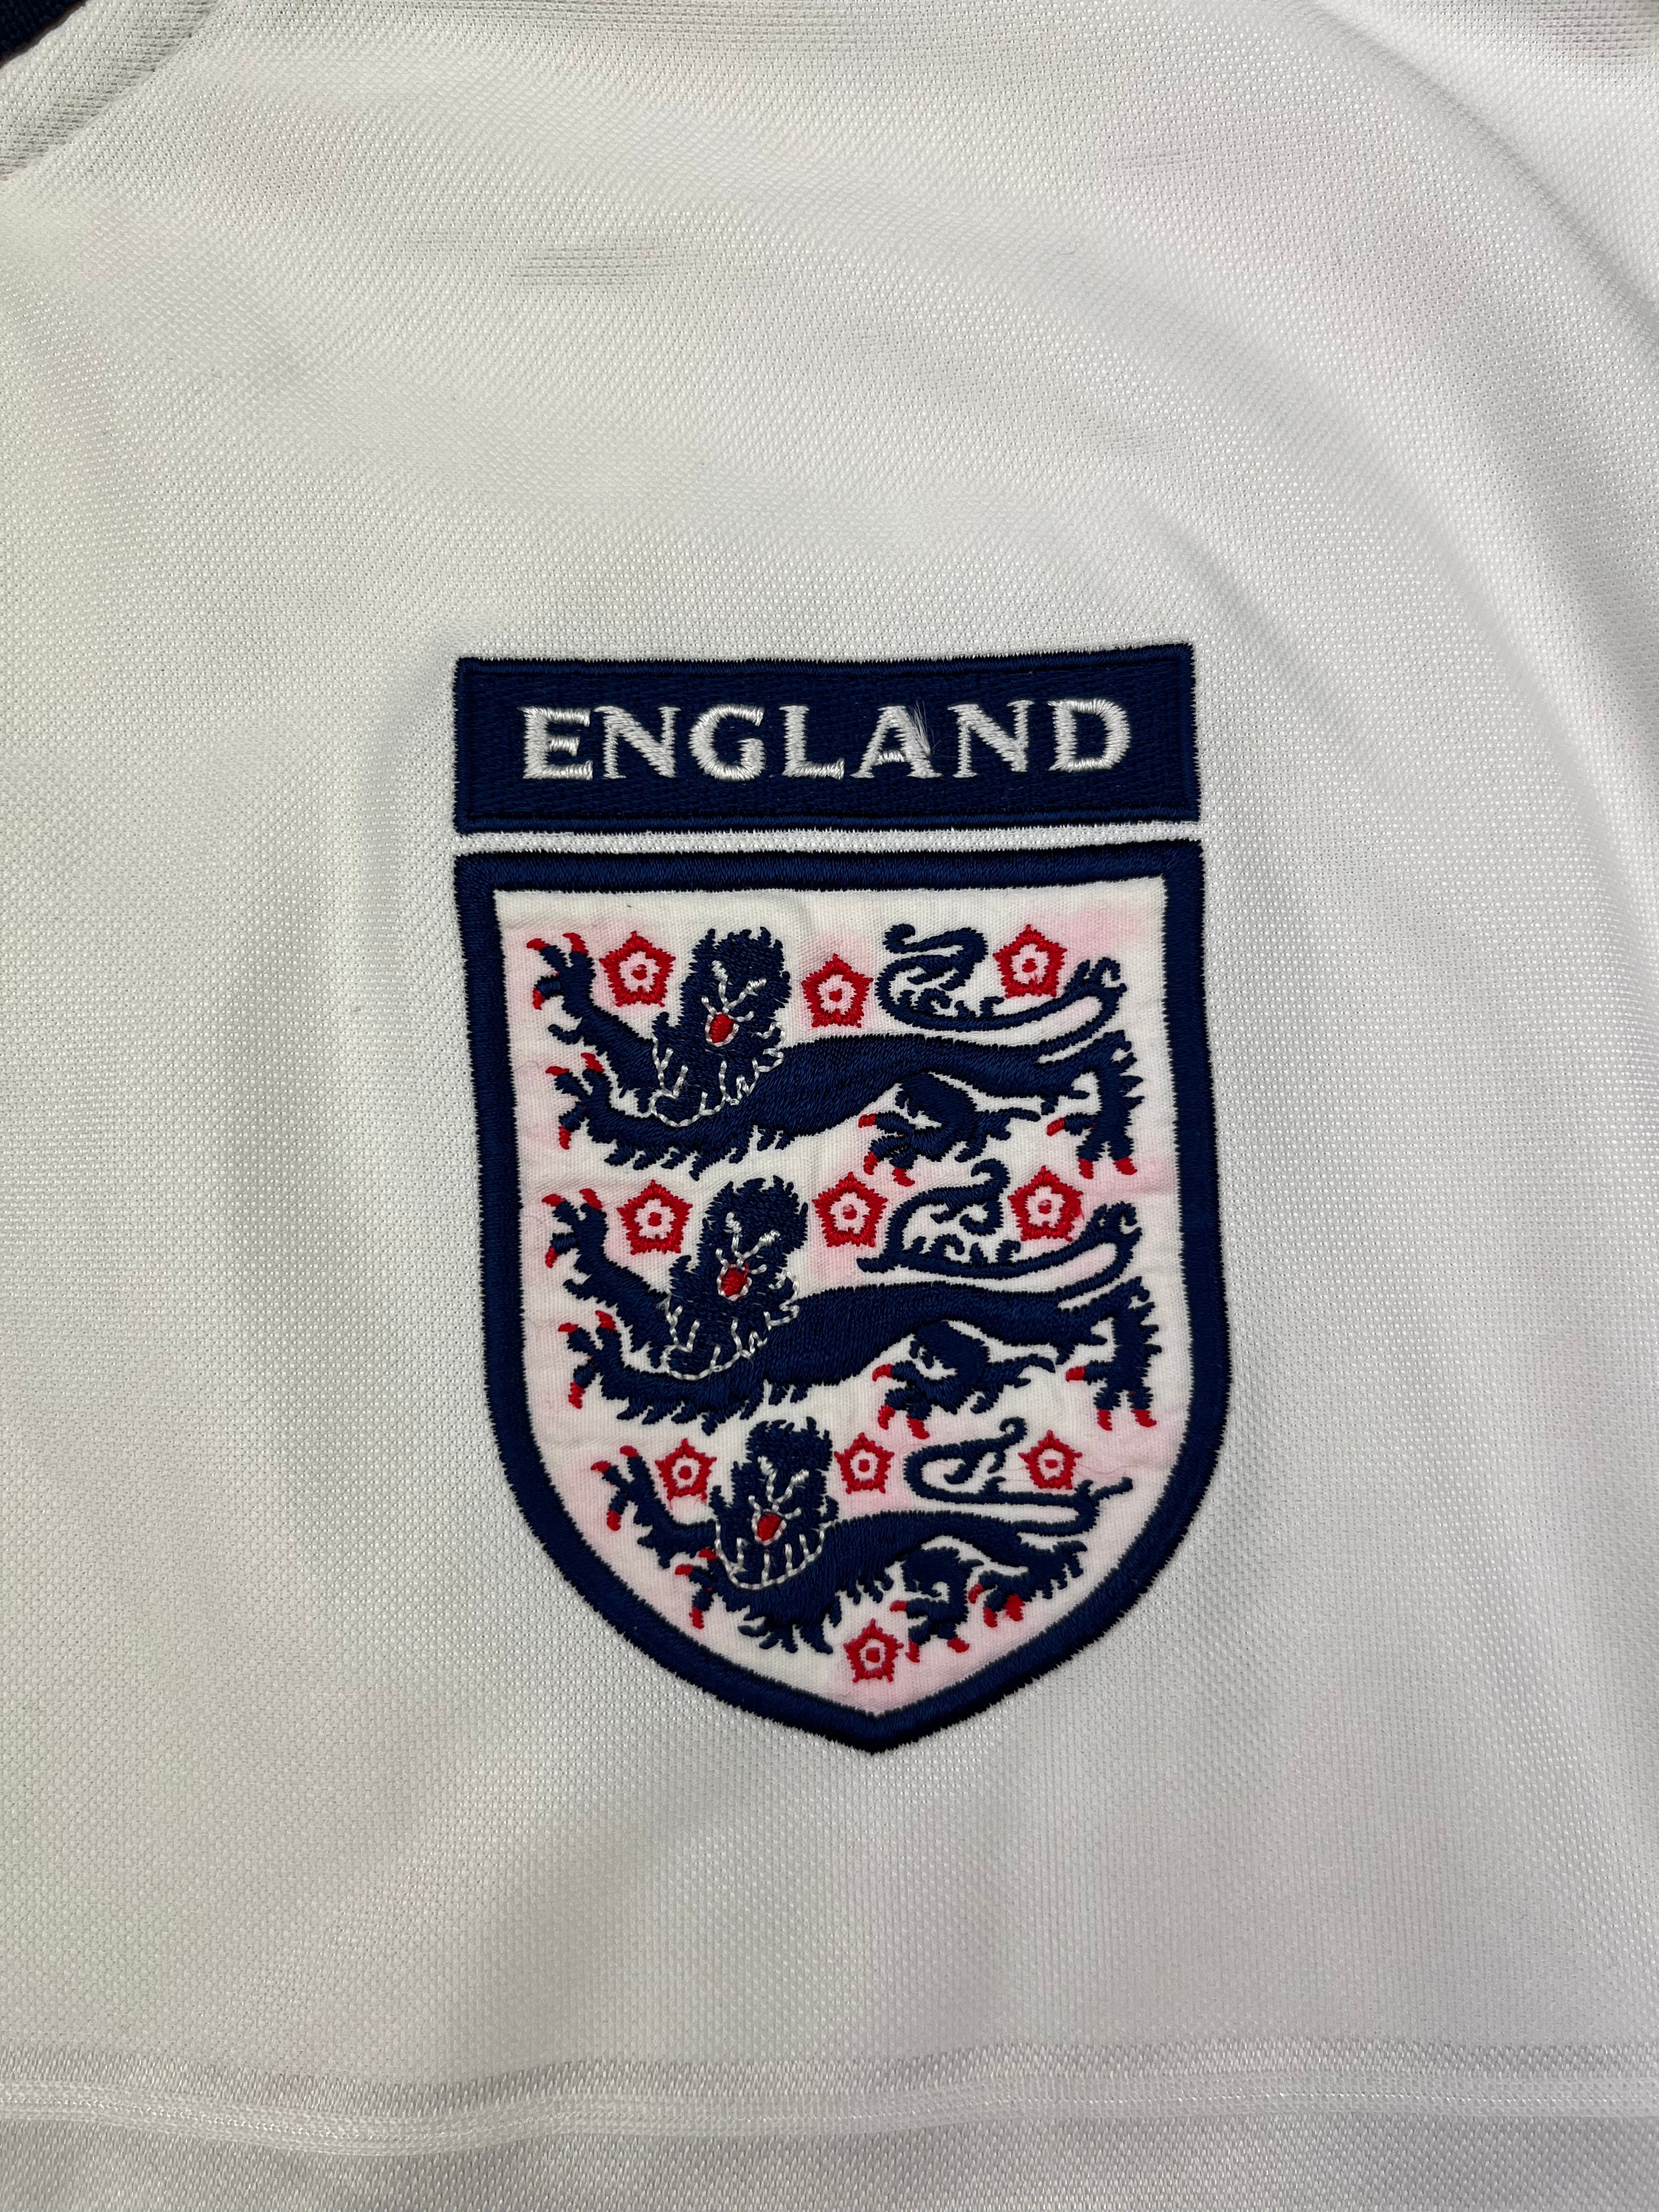 1999/01 England Home Shirt (XL) 8.5/10